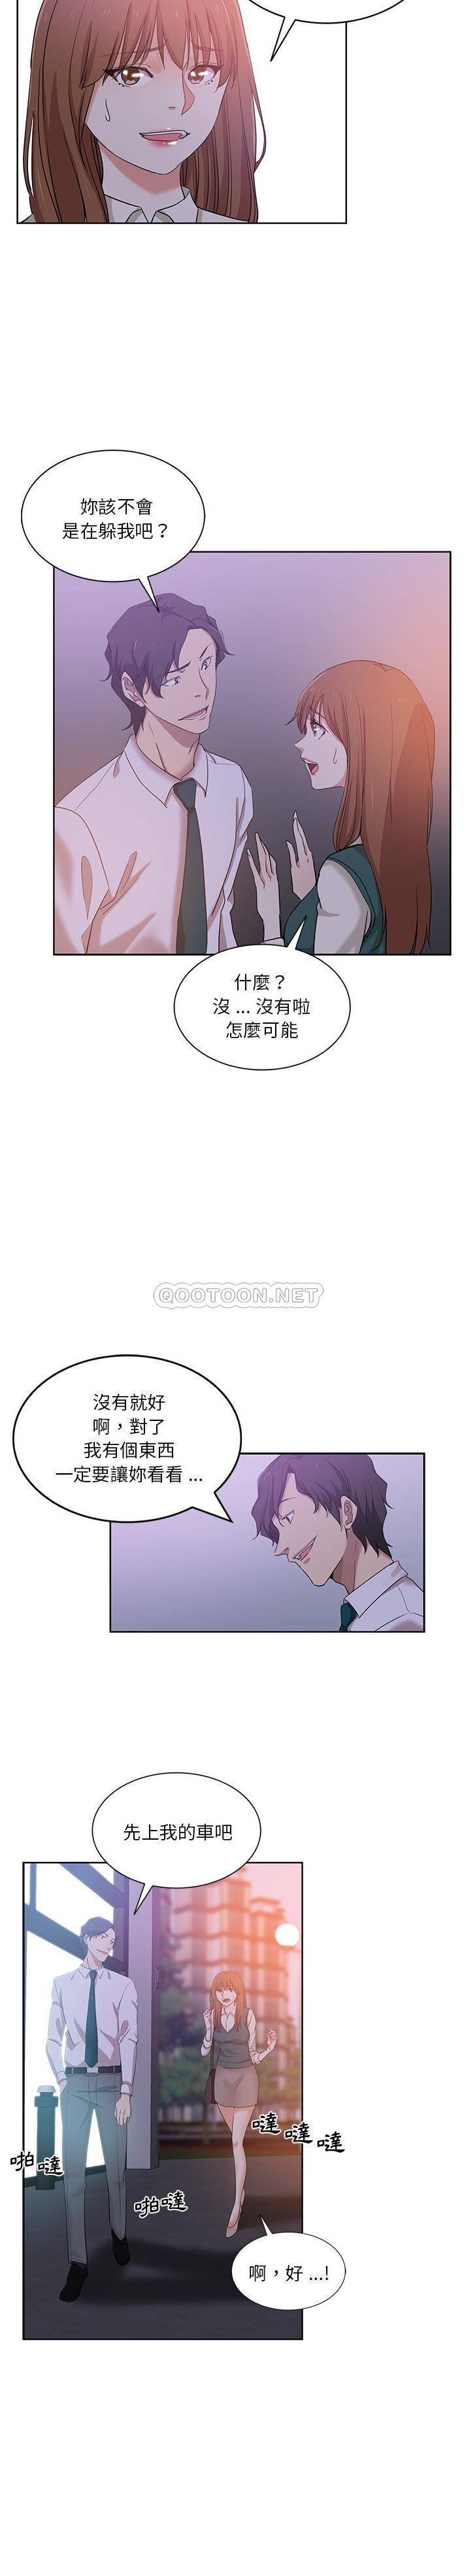 韩国污漫画 危險純友誼 第27话 14